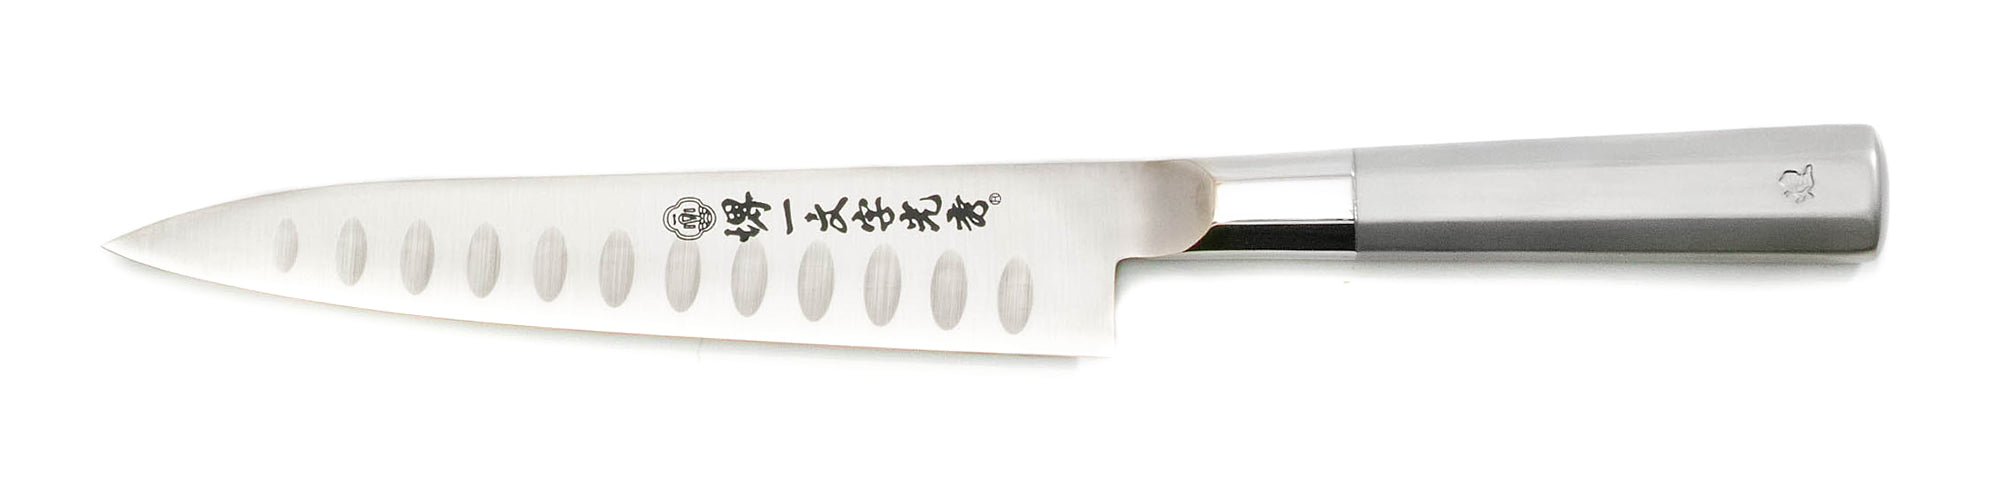 Couteau Petty - inoxydable VG1 -  simple tranchant lame alvéolée